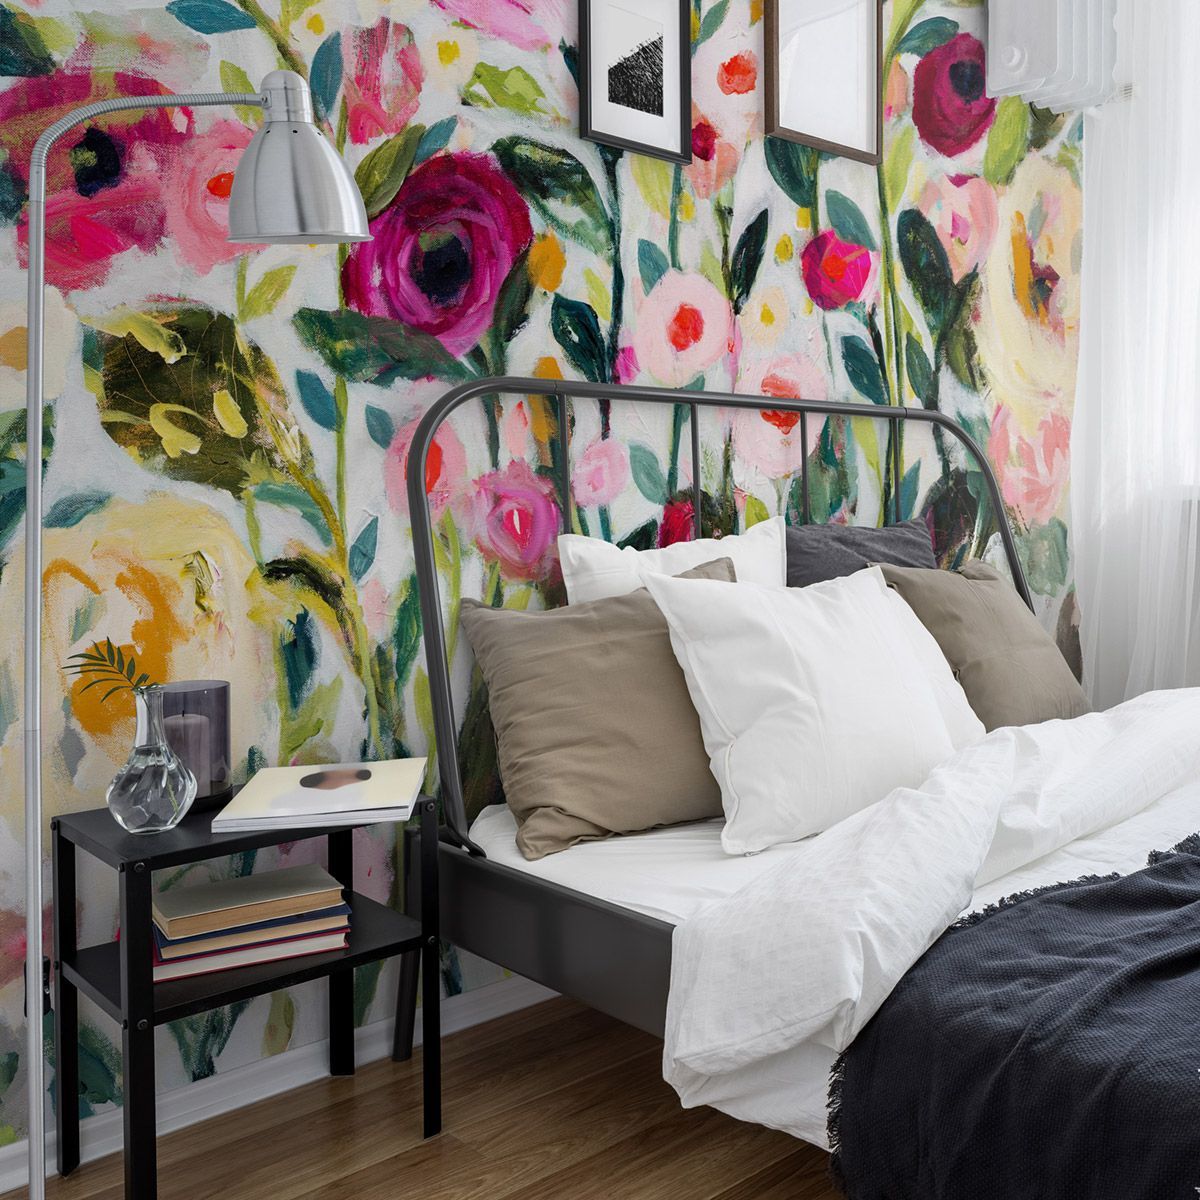 Floral Wallpaper | Floral Wallpaper Accent Wall | Floral Wallpaper Bedroom - Floral Wallpaper | Floral Wallpaper Accent Wall | Floral Wallpaper Bedroom -   18 beauty Wallpaper bedroom ideas